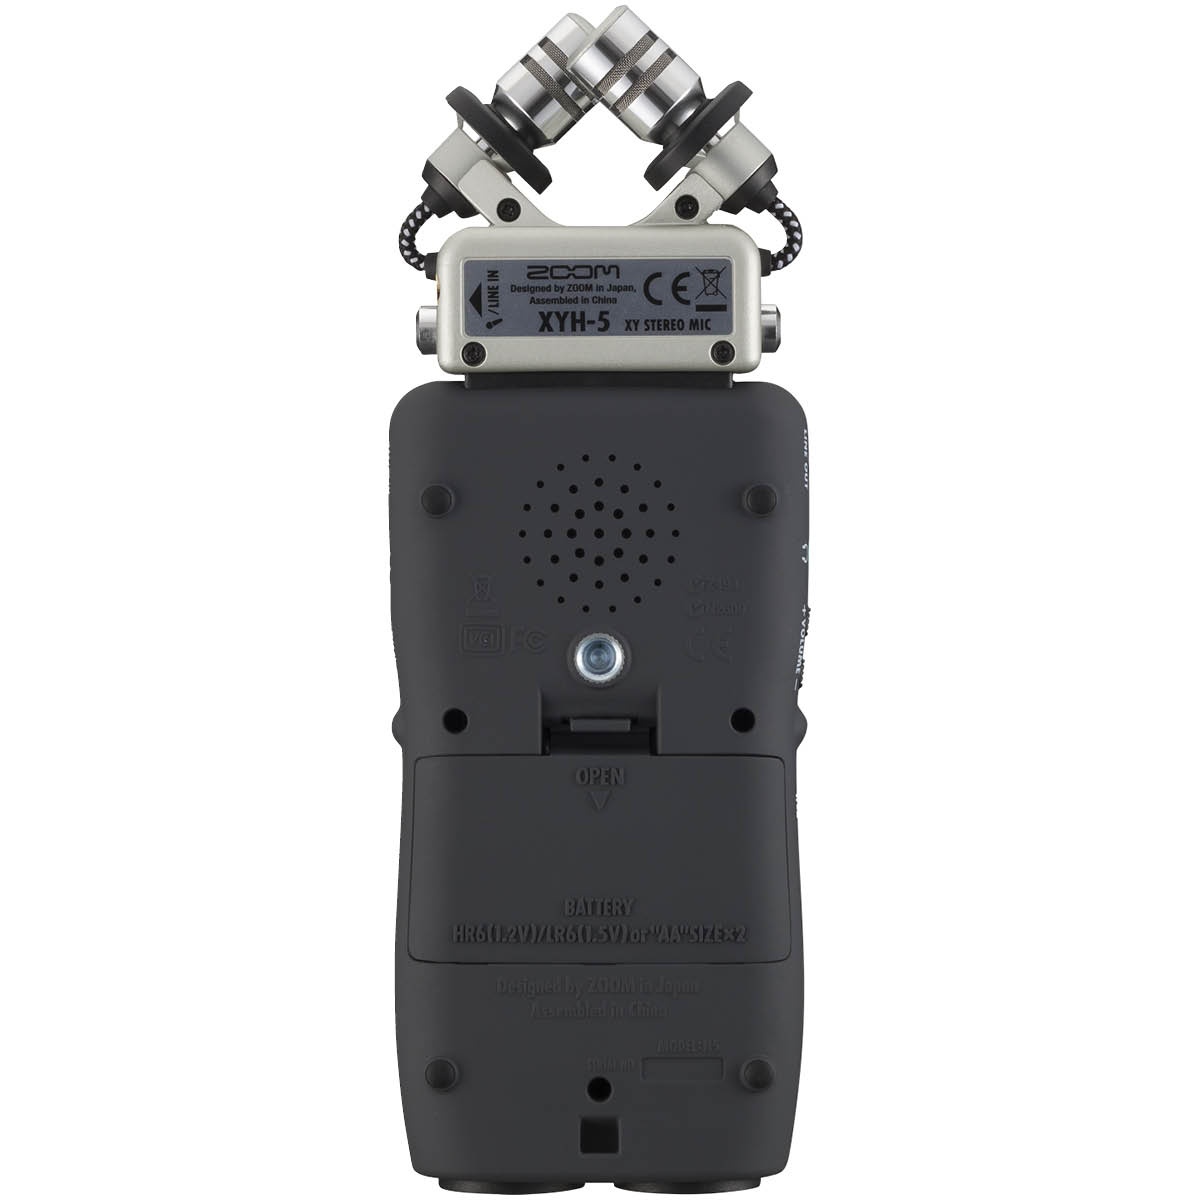 Zoom H5 Audio Recorder